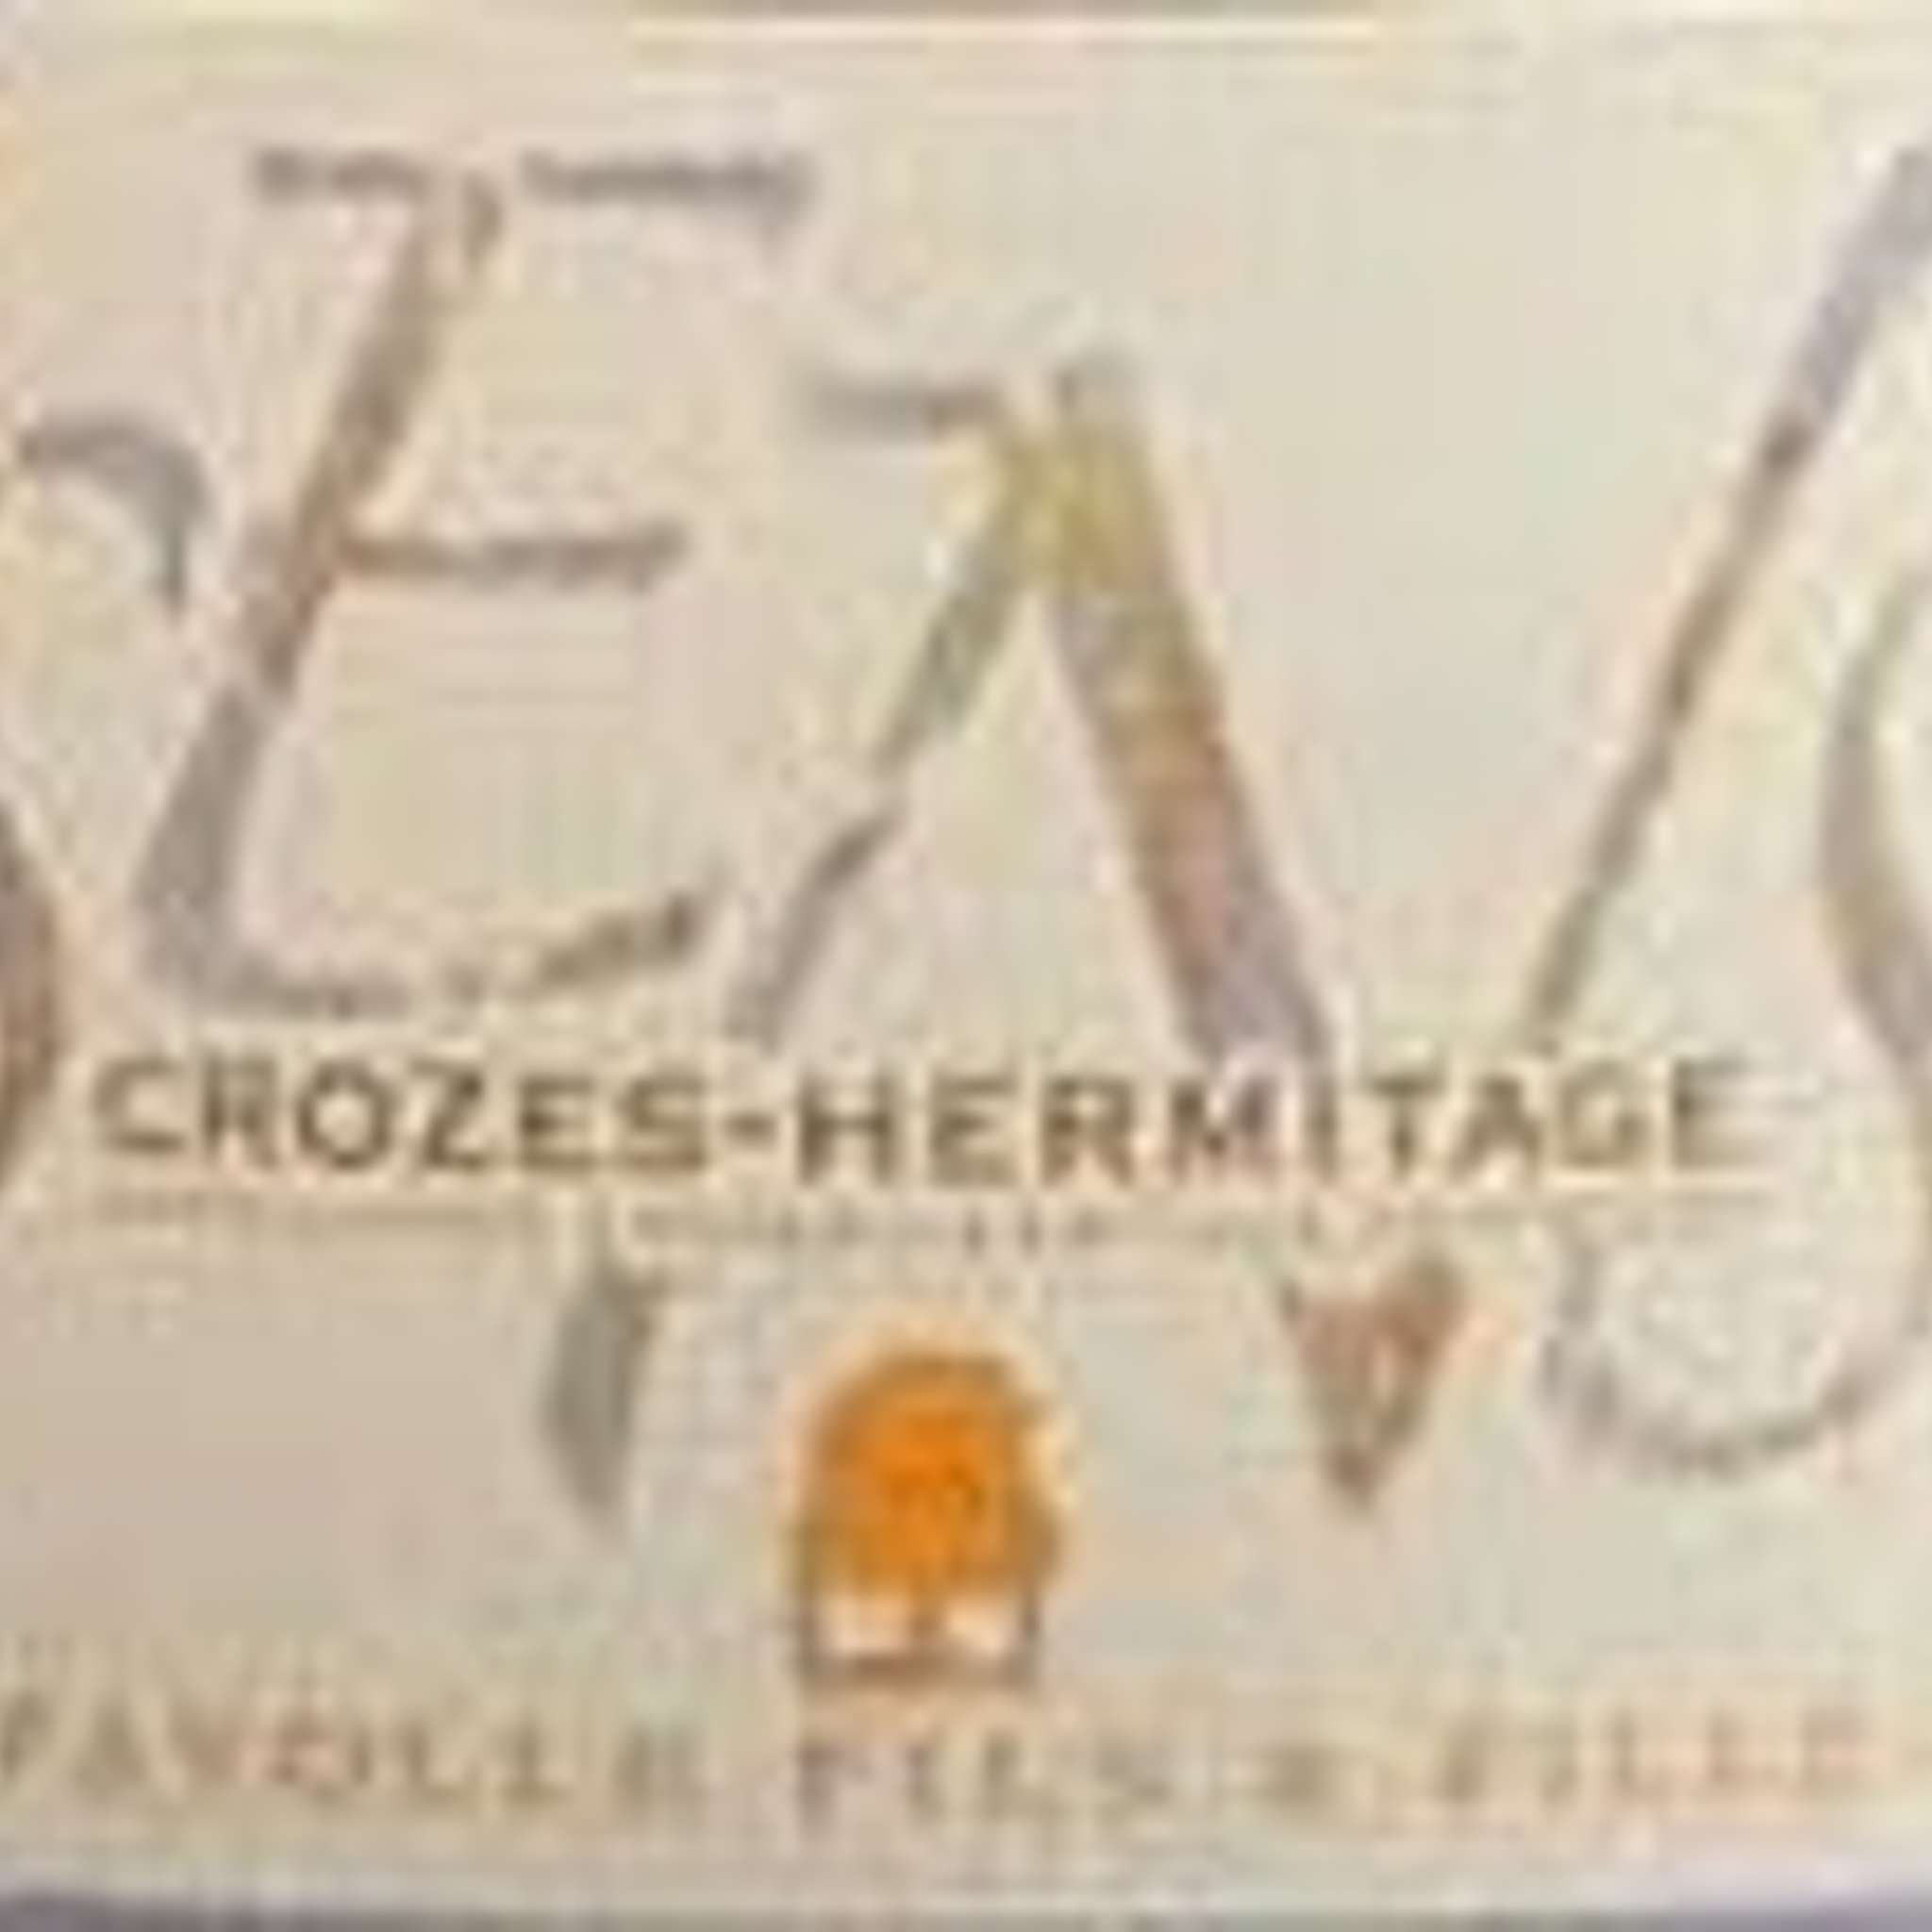 クローズ・エルミタージュ・ブラン
Croze Hermitage Blanc